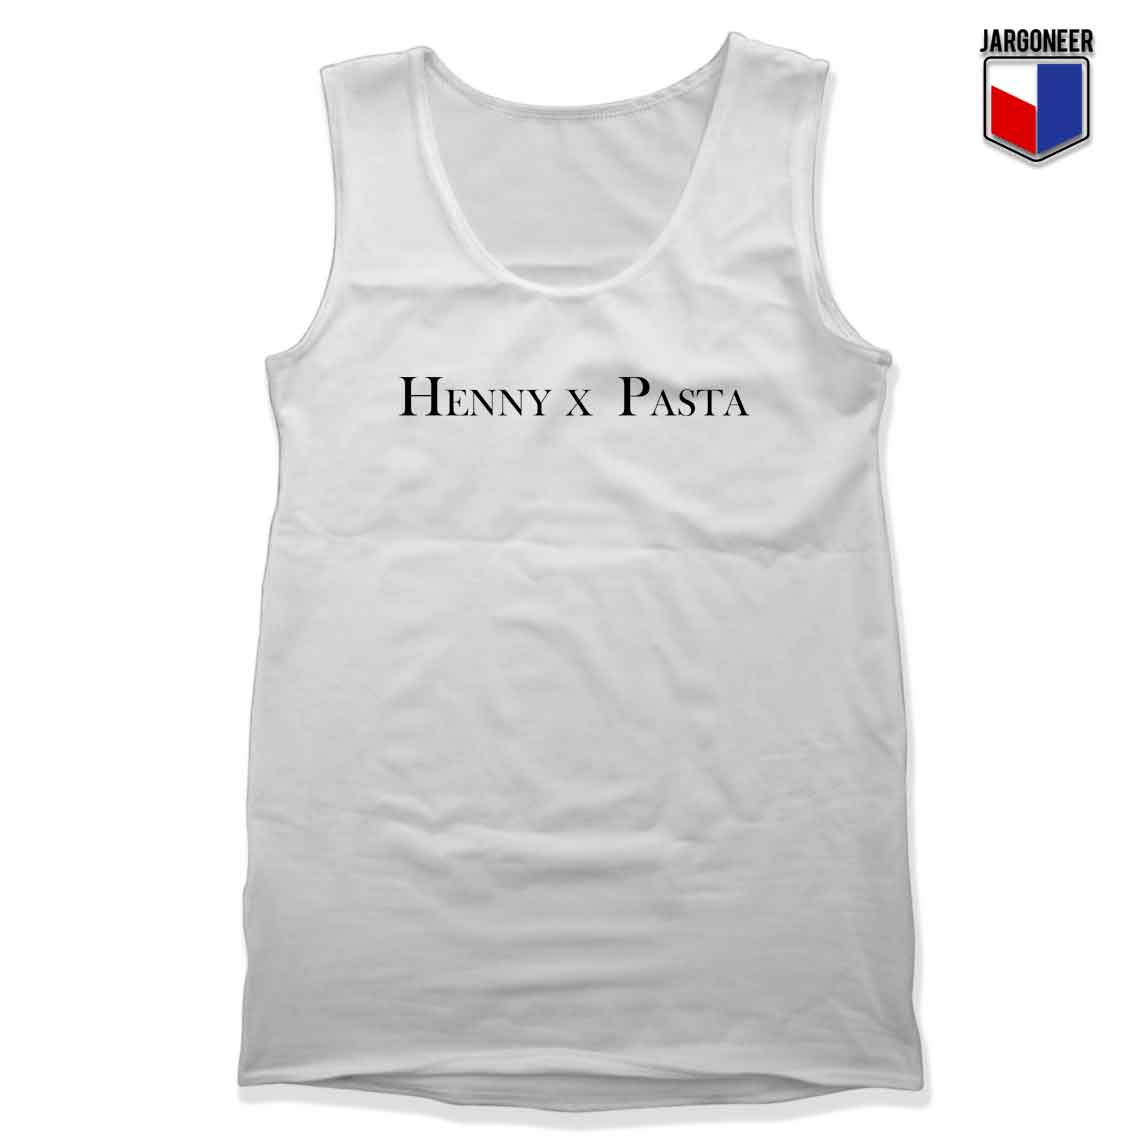 Henny x Pasta 1 - Shop Unique Graphic Cool Shirt Designs